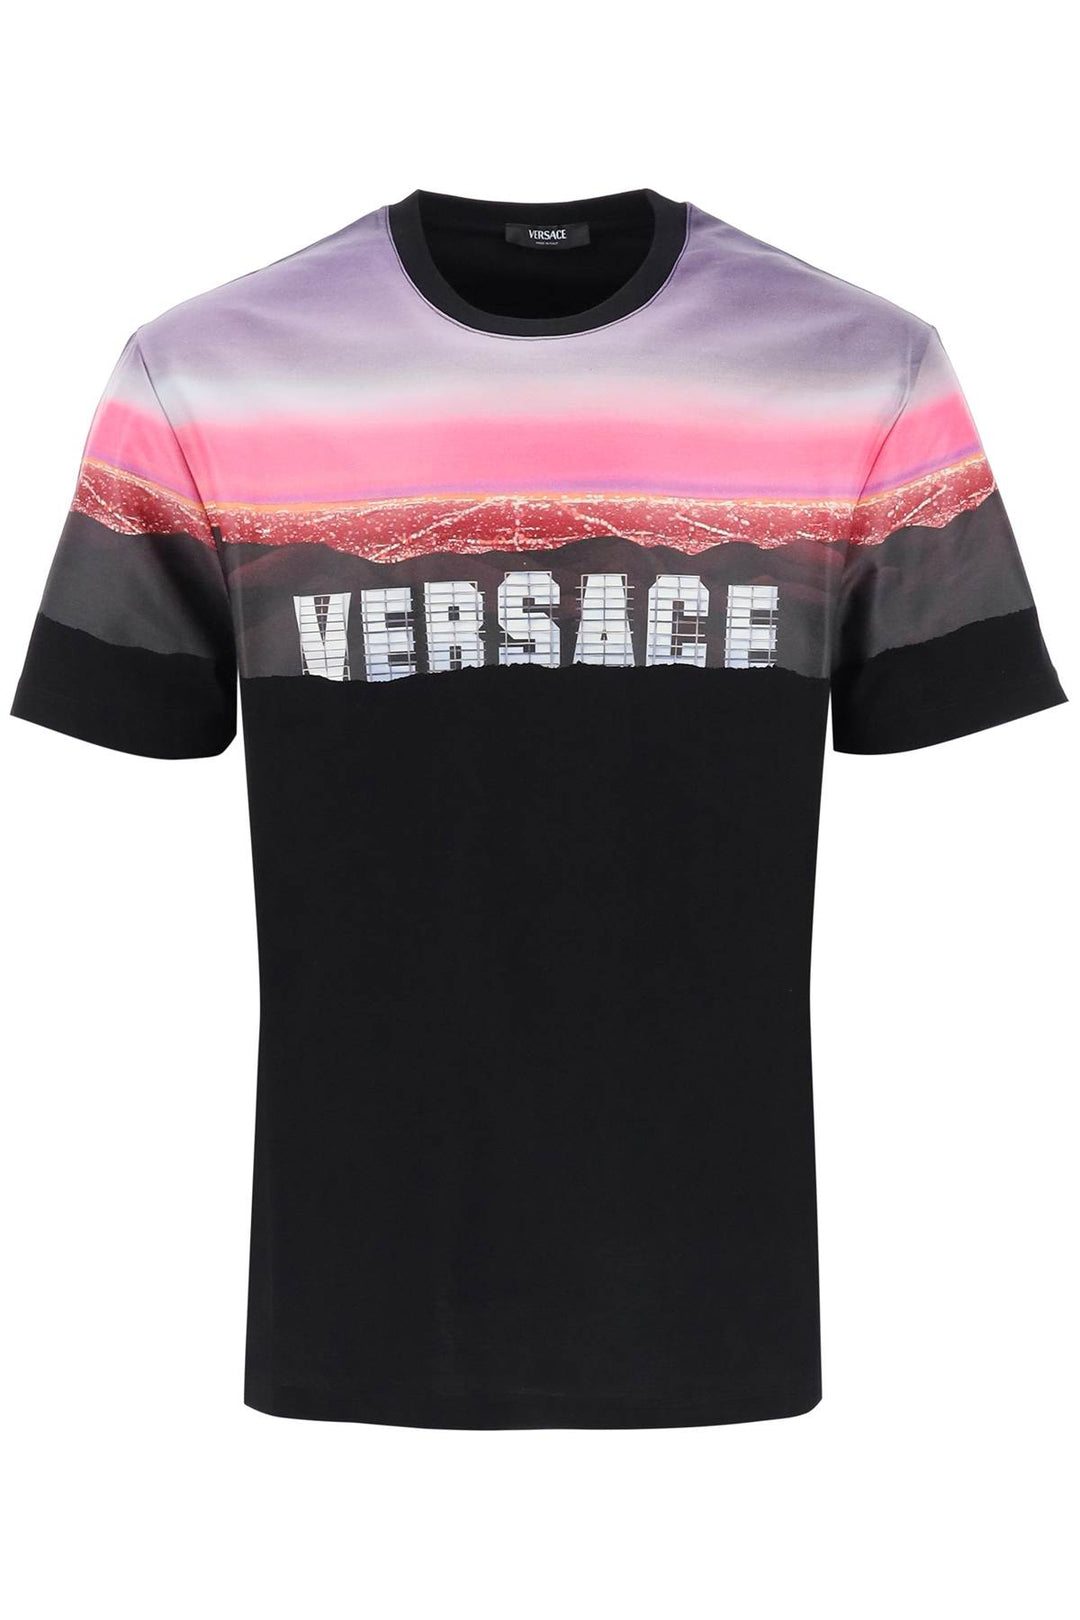 Versace Hills T Shirt   Nero